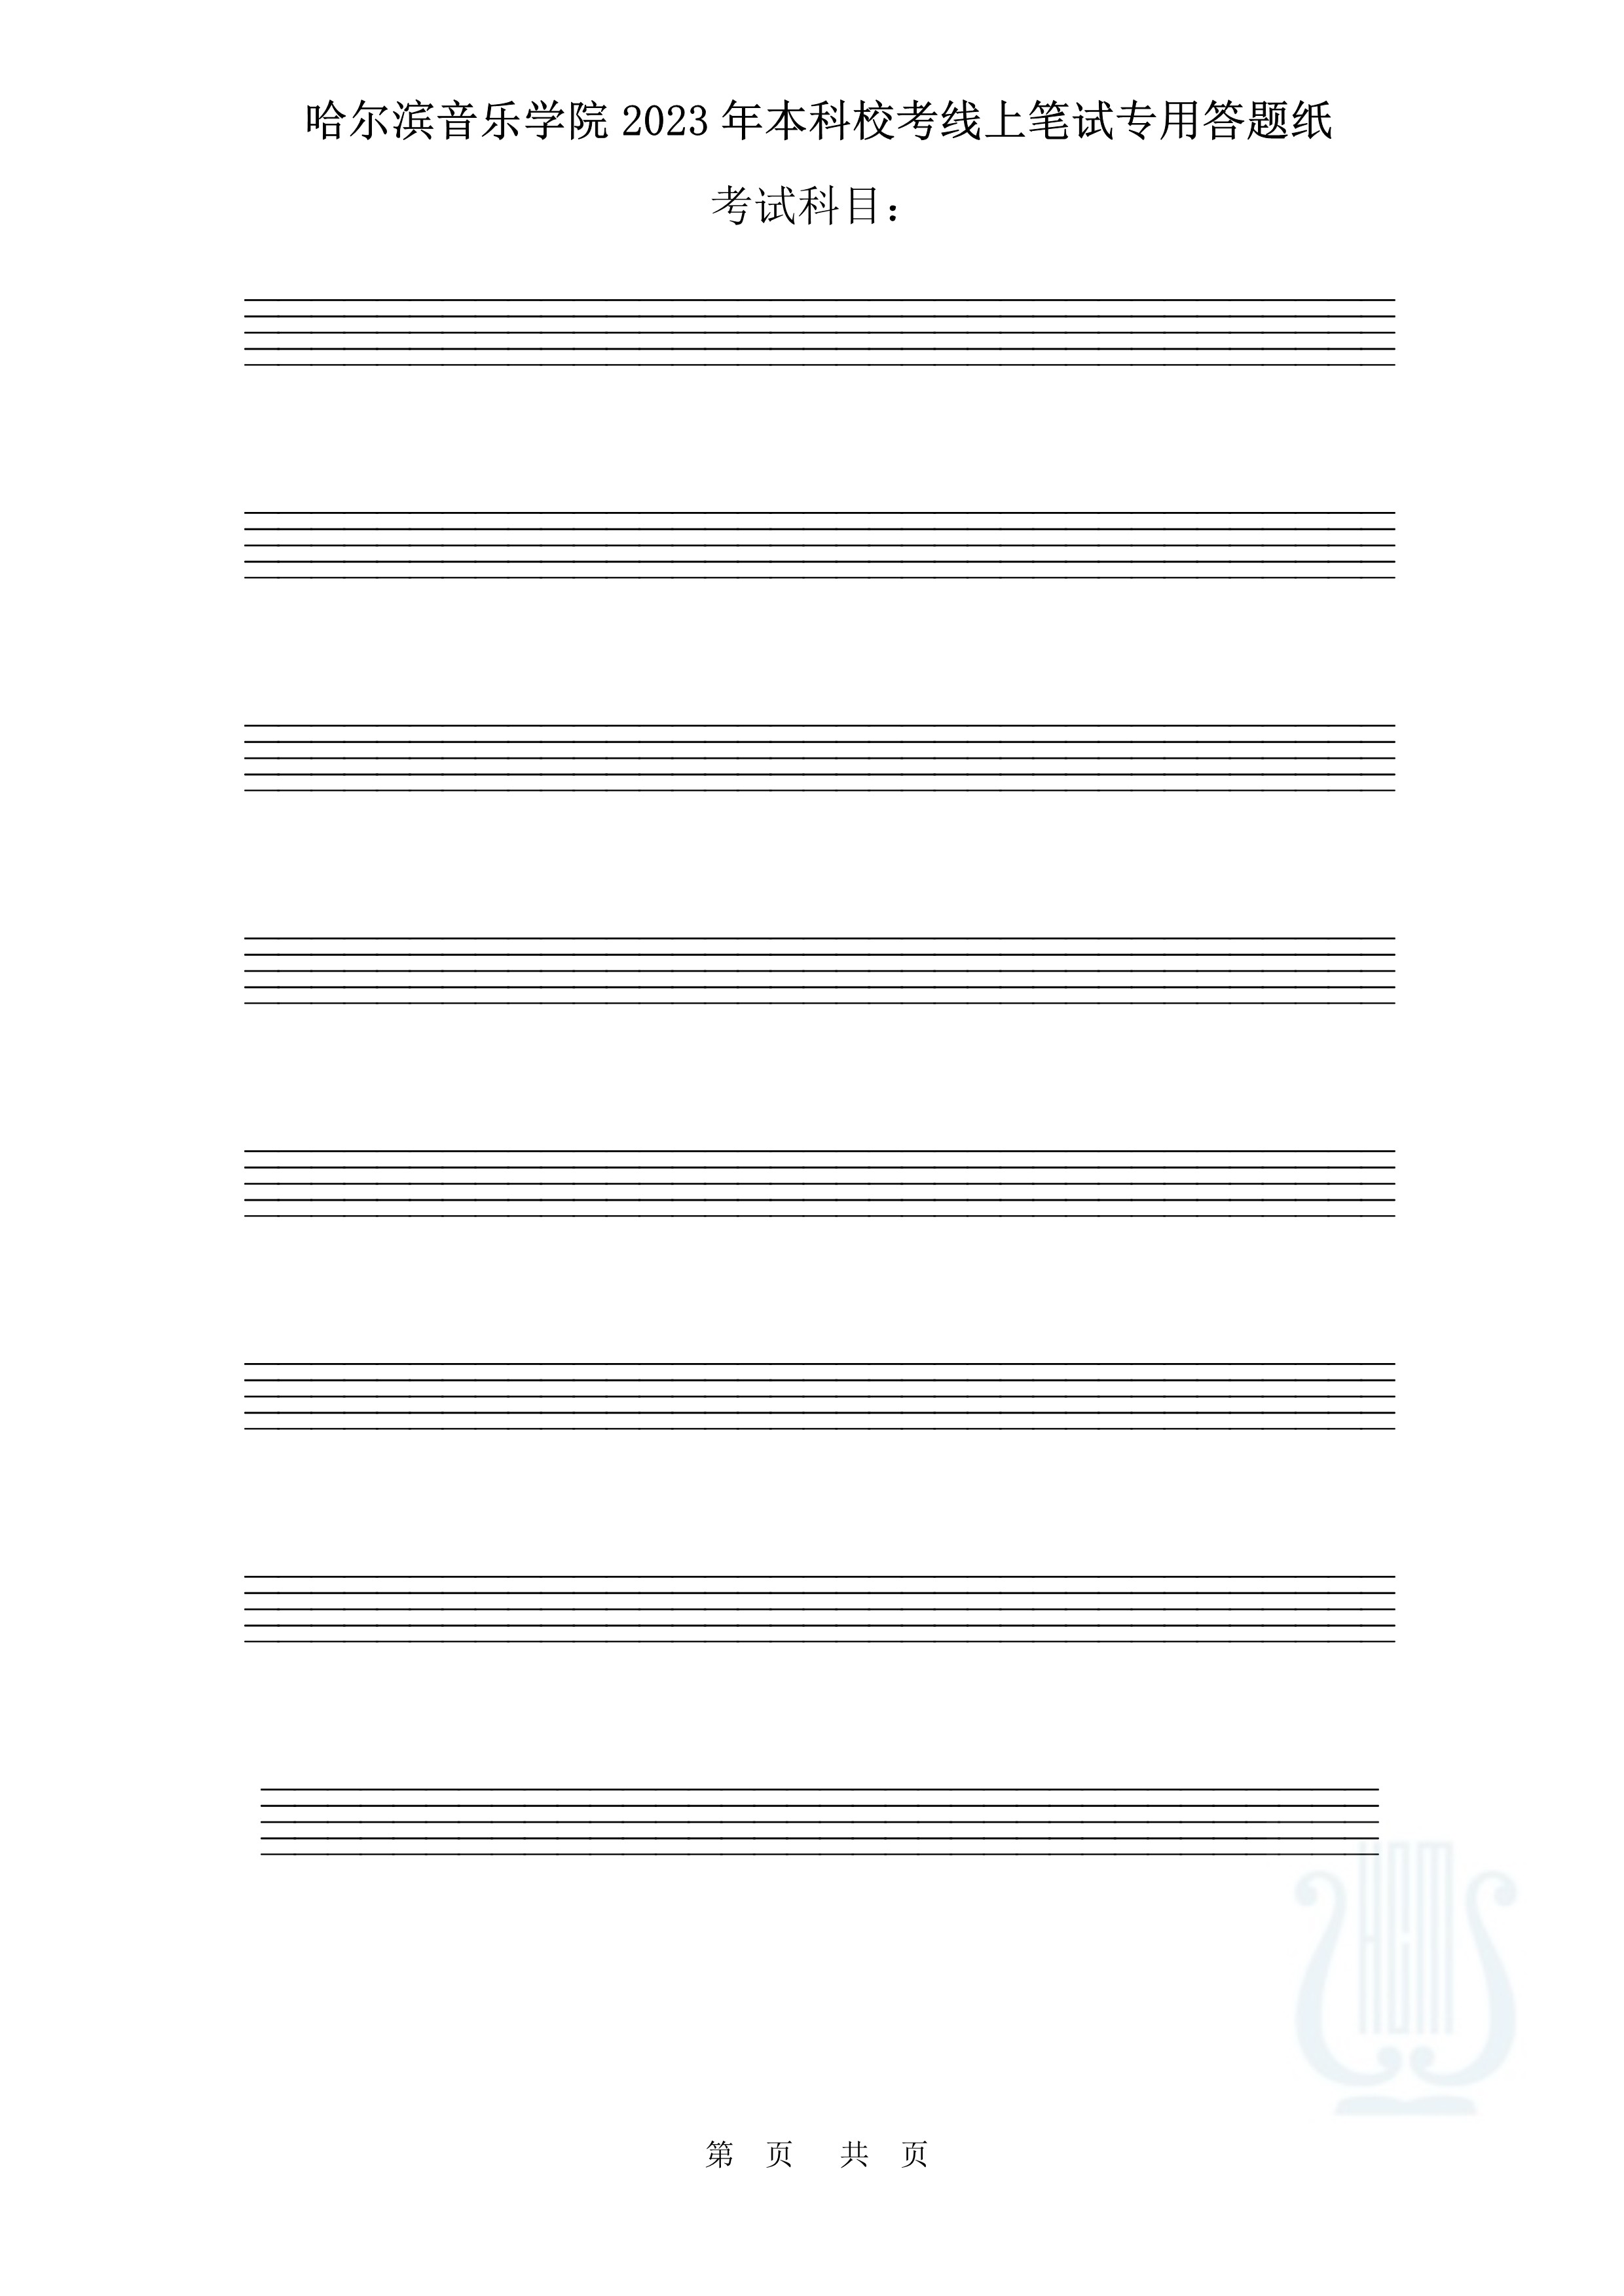 哈尔滨音乐学院2023年本科校考线上笔试答题纸（作曲与作曲技术理论）_4.jpg